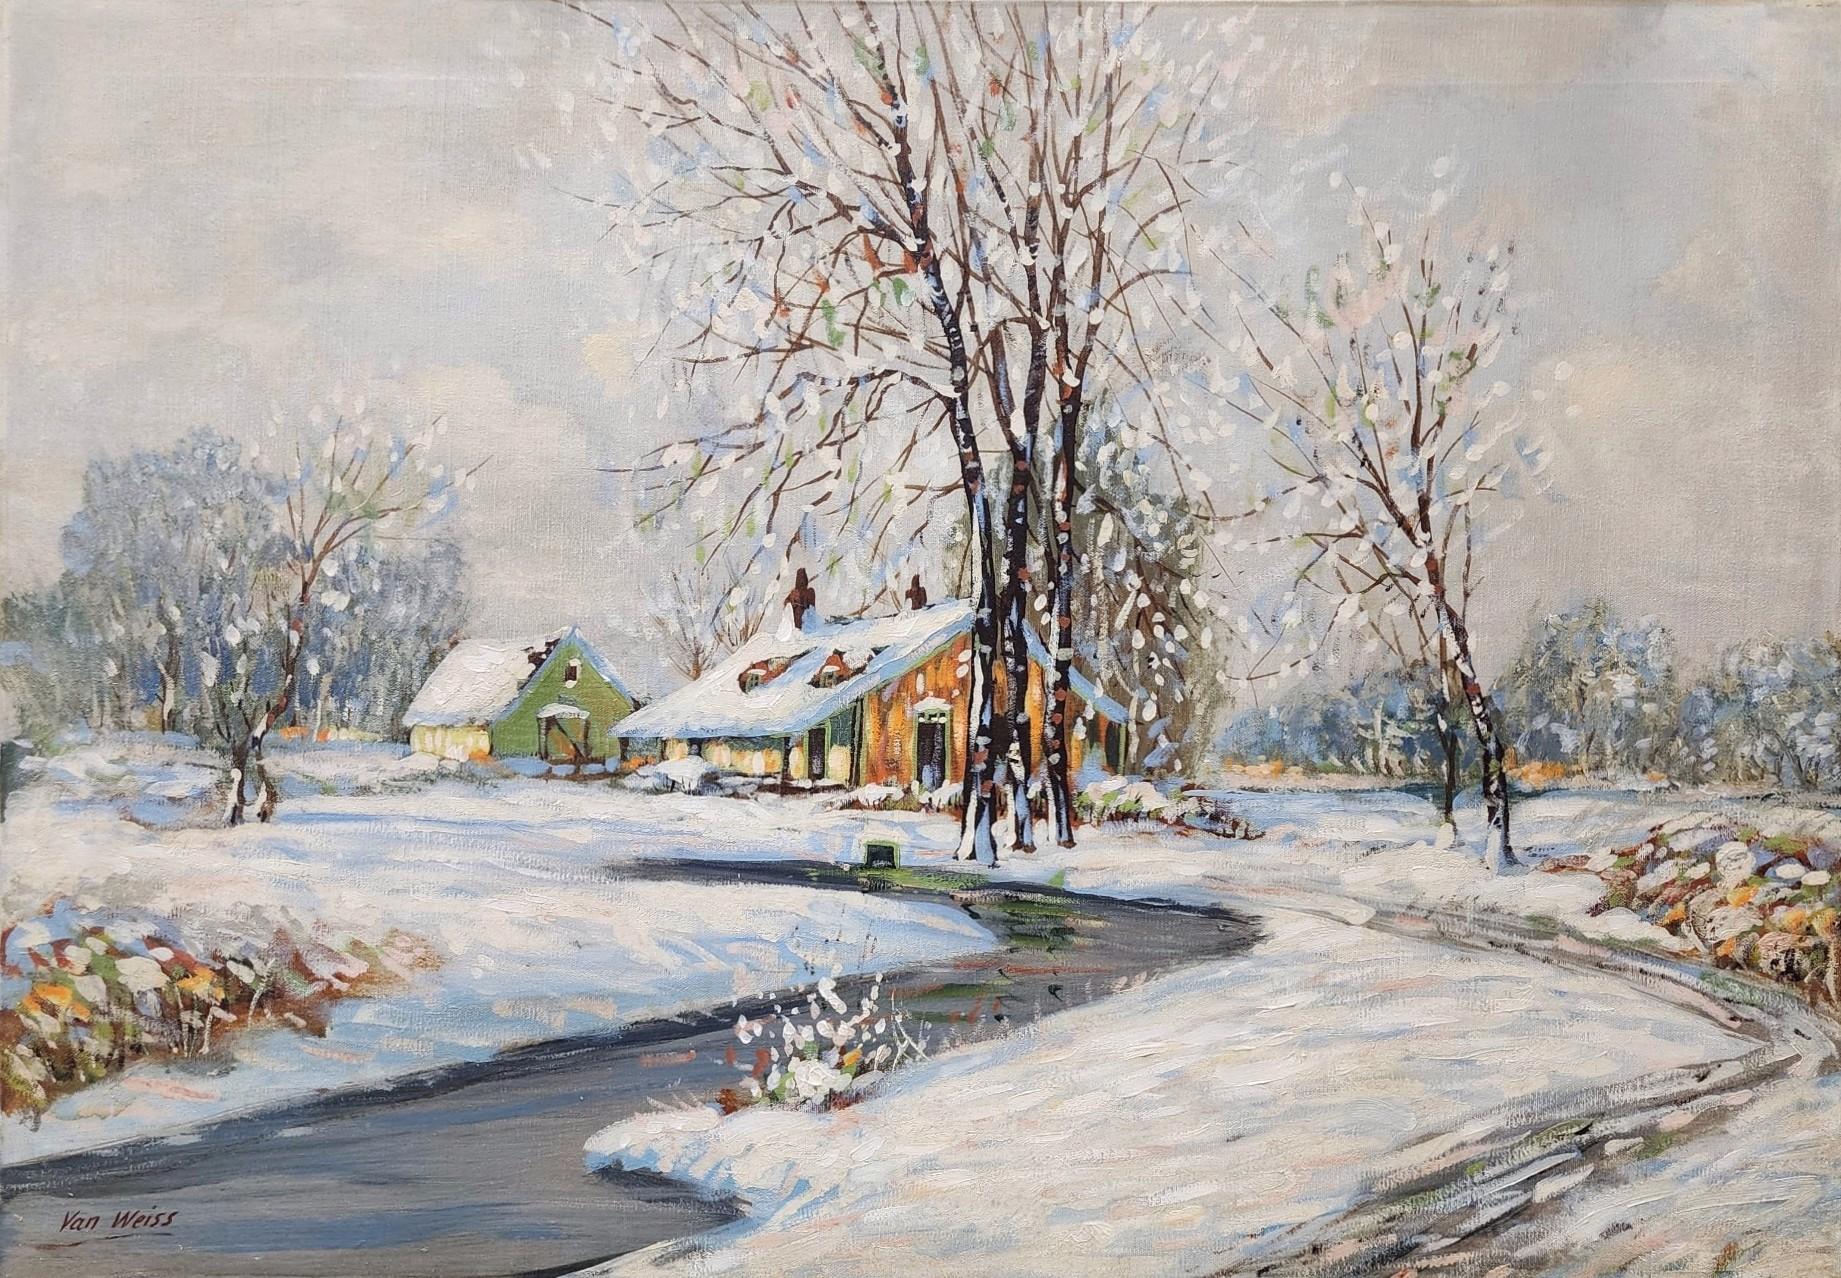 Van Weiss Landscape Painting - Winter Landscape, c. 1930s House, River, Snow